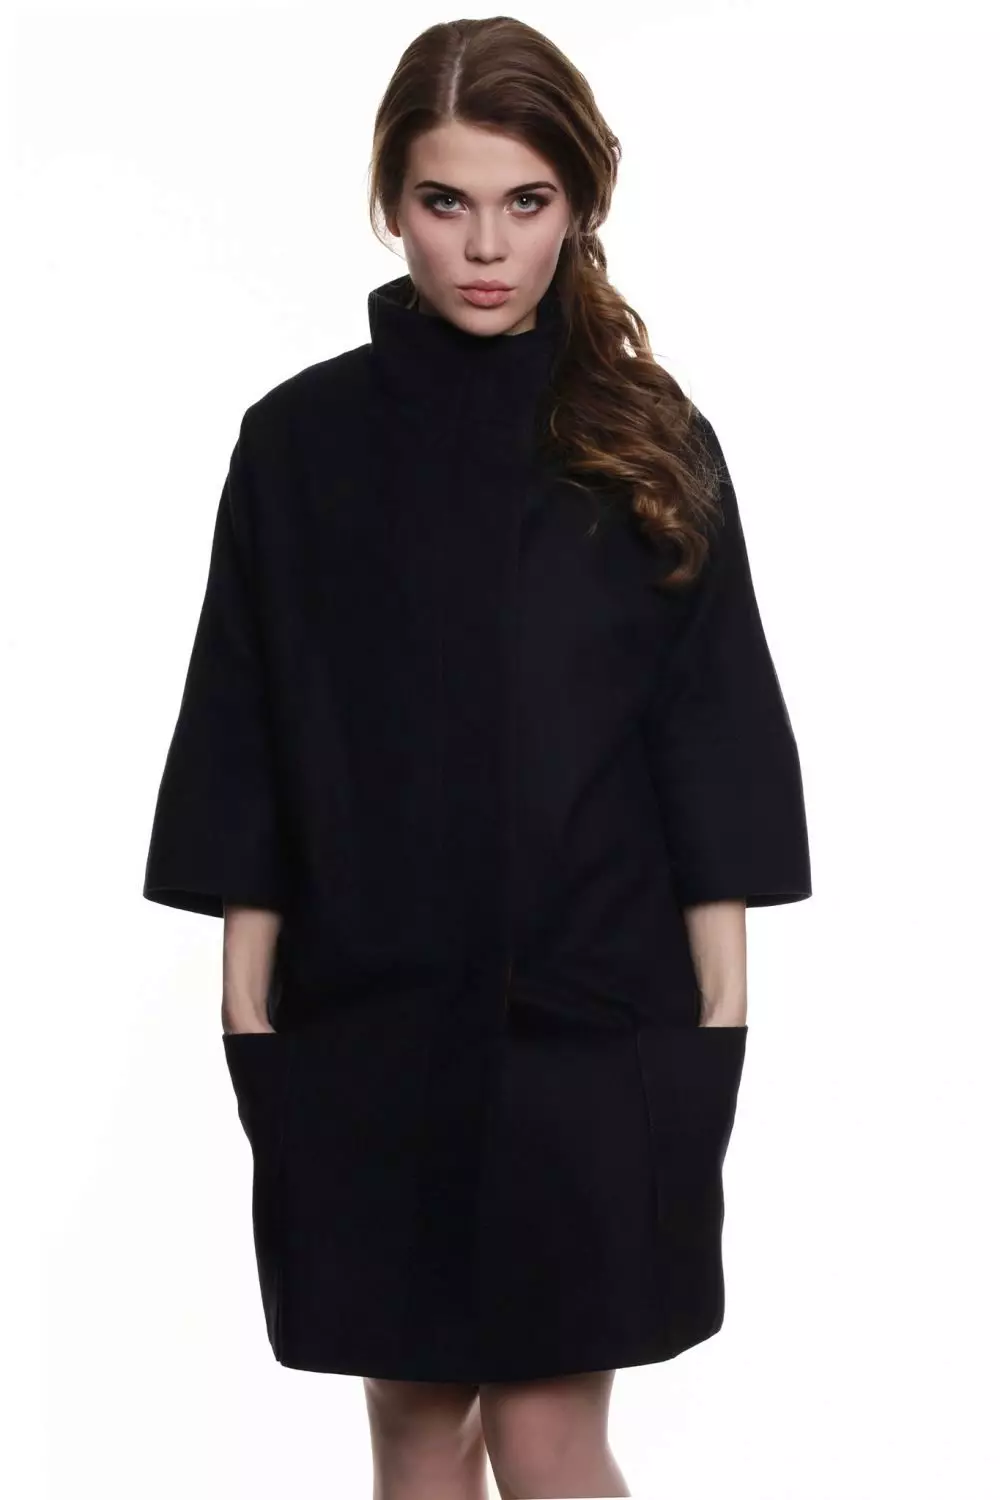 Žena kabát jaro 2021 (356 fotek): od ruských výrobců, modelů, stylů a stylů, prošívaných, krátkých, tlumení, kůže 623_131